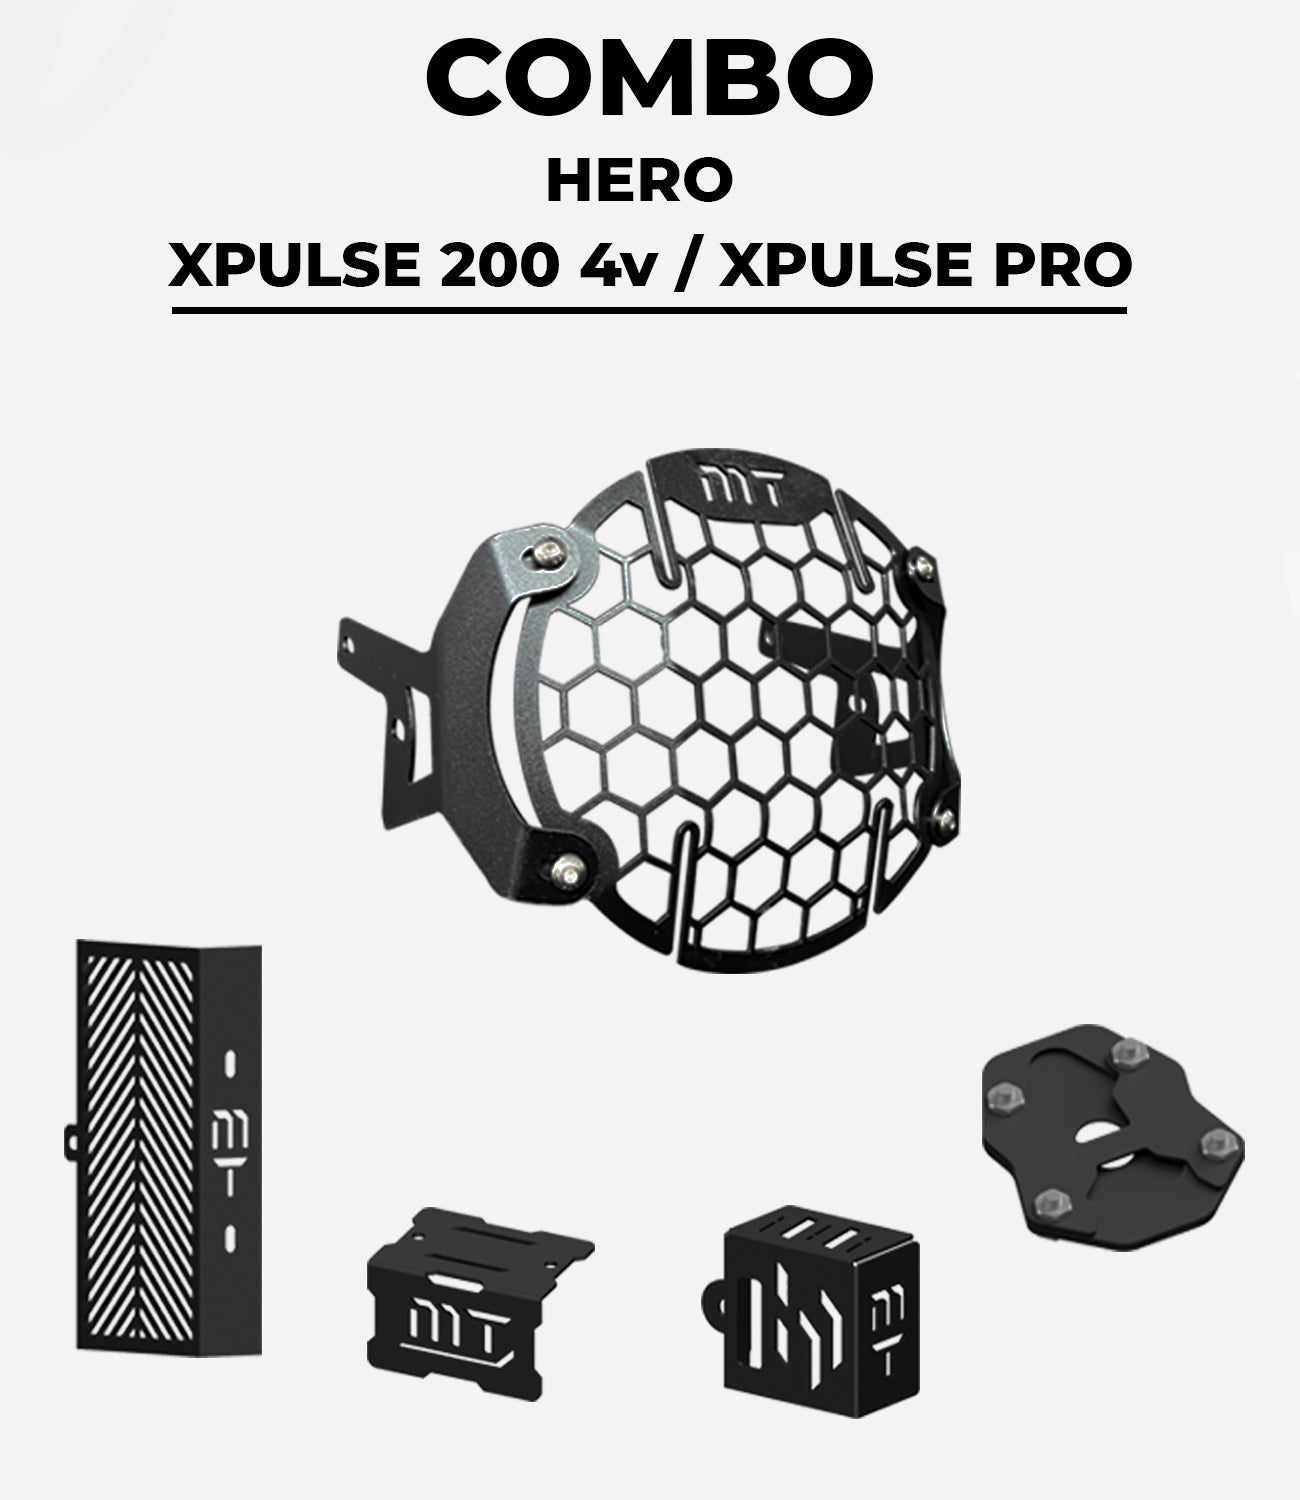 XPULSE 200 4v / XPULSE PRO